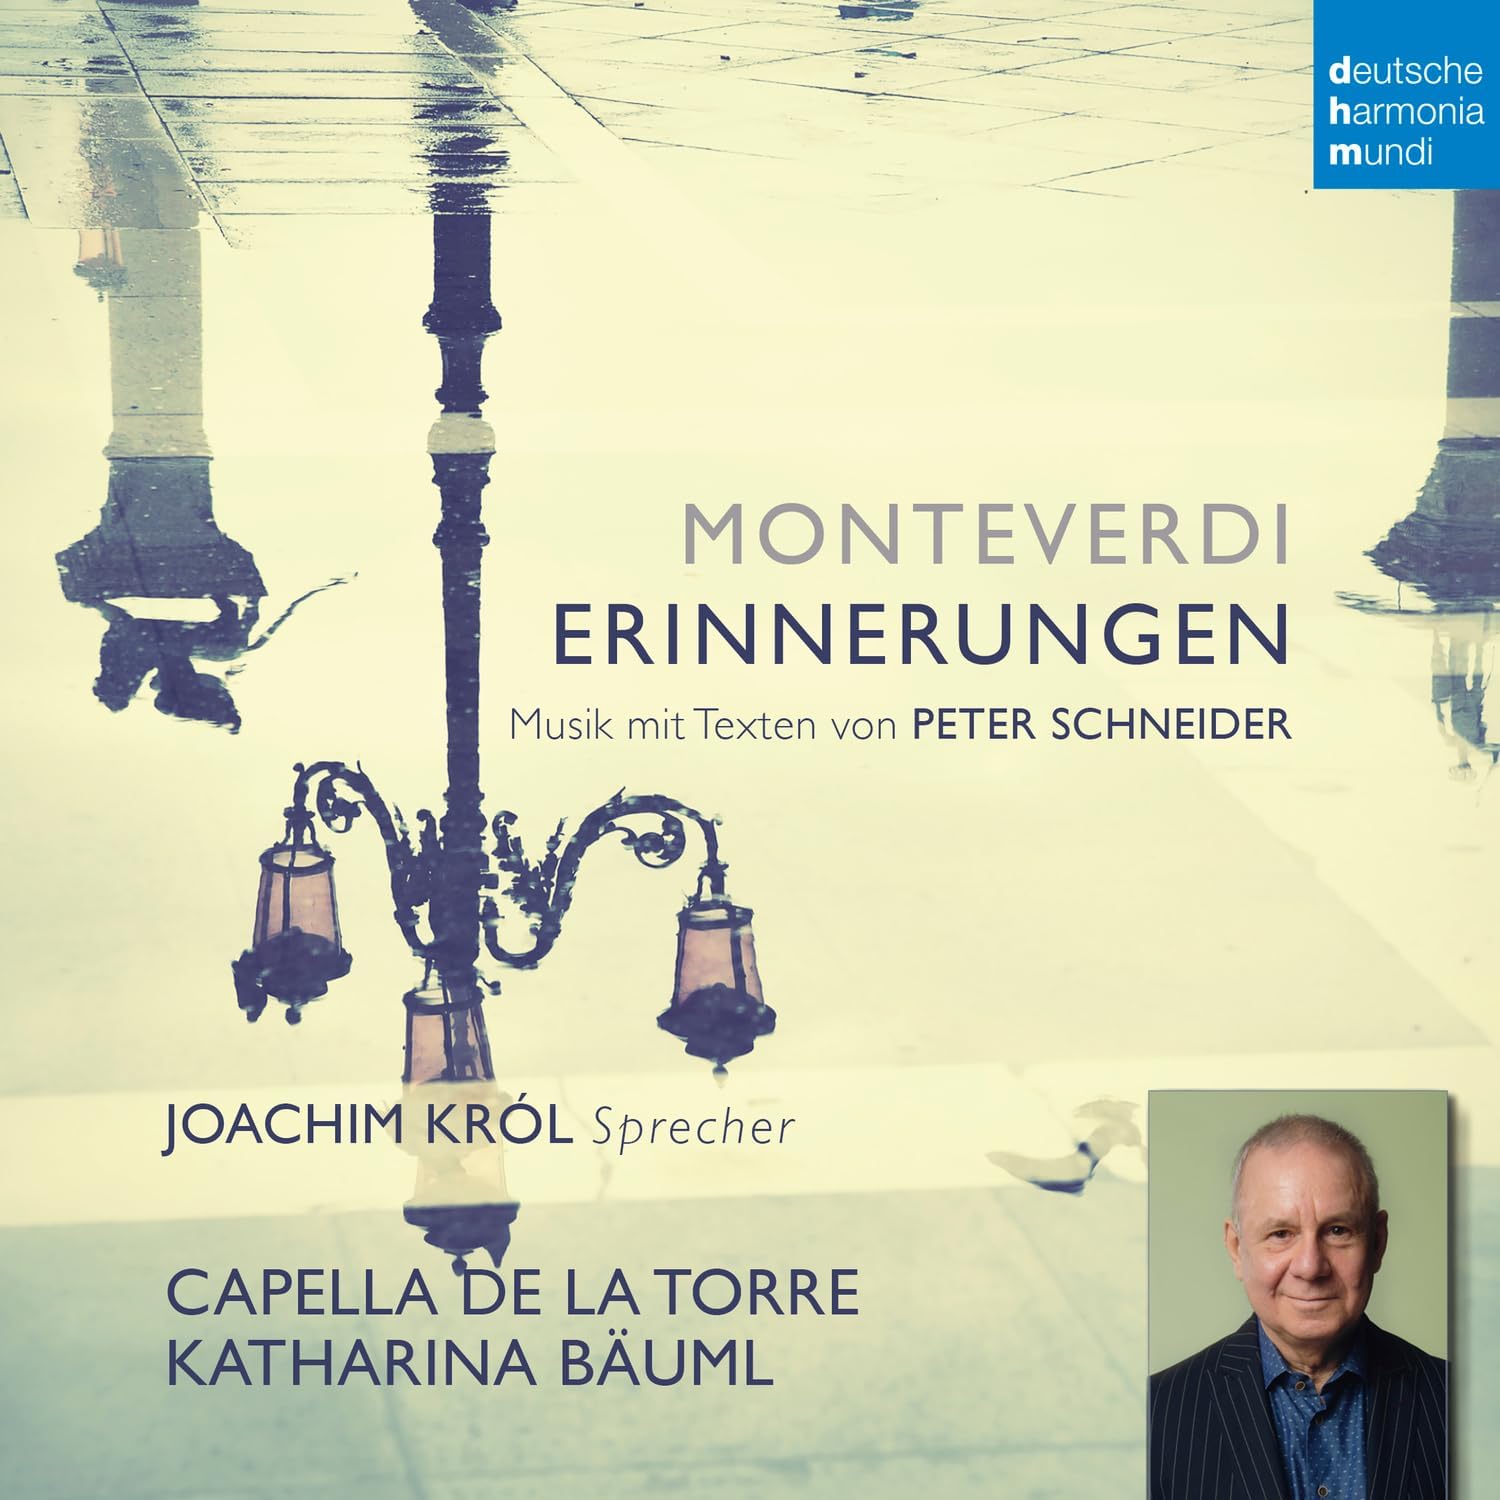 Monteverdi Erinnerungen | Joachim Krol, Capella de la Torre, Katharina Bauml